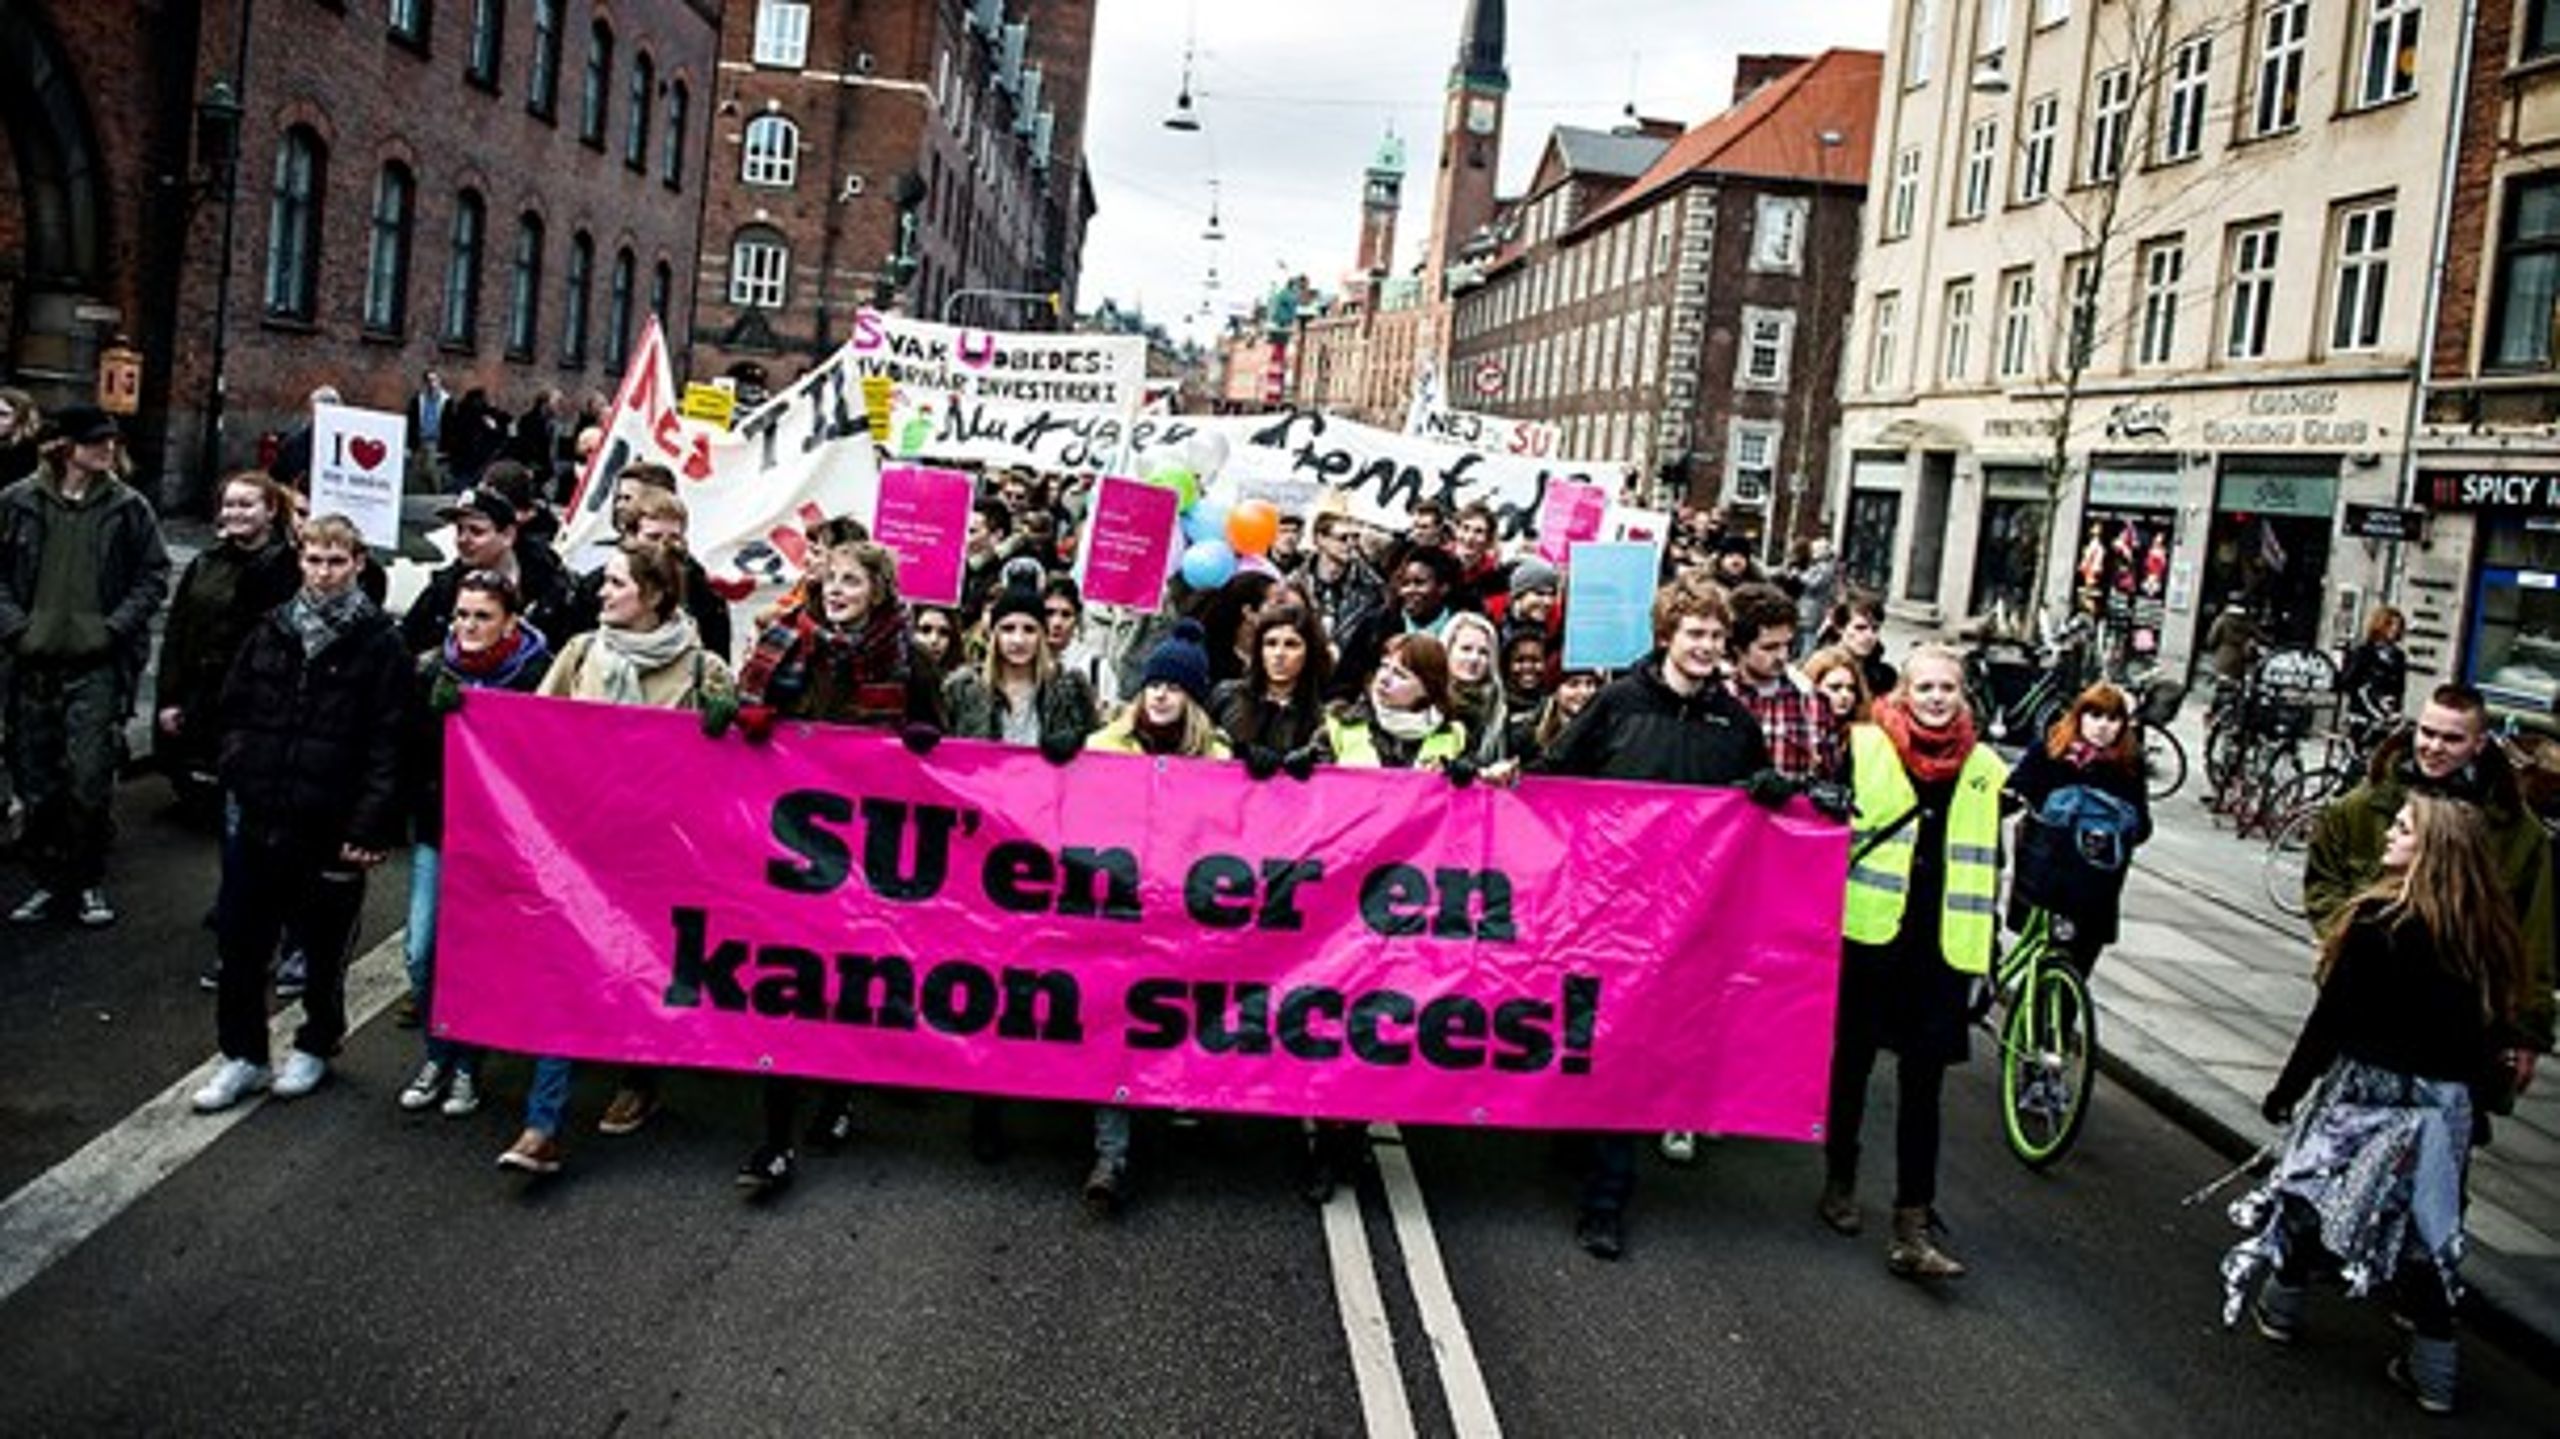 Det er ikke første gang, at SU-reformer har mødt modstand. Tilbage i 2013 gik danske gymnasieelever på gaden i protest.&nbsp;